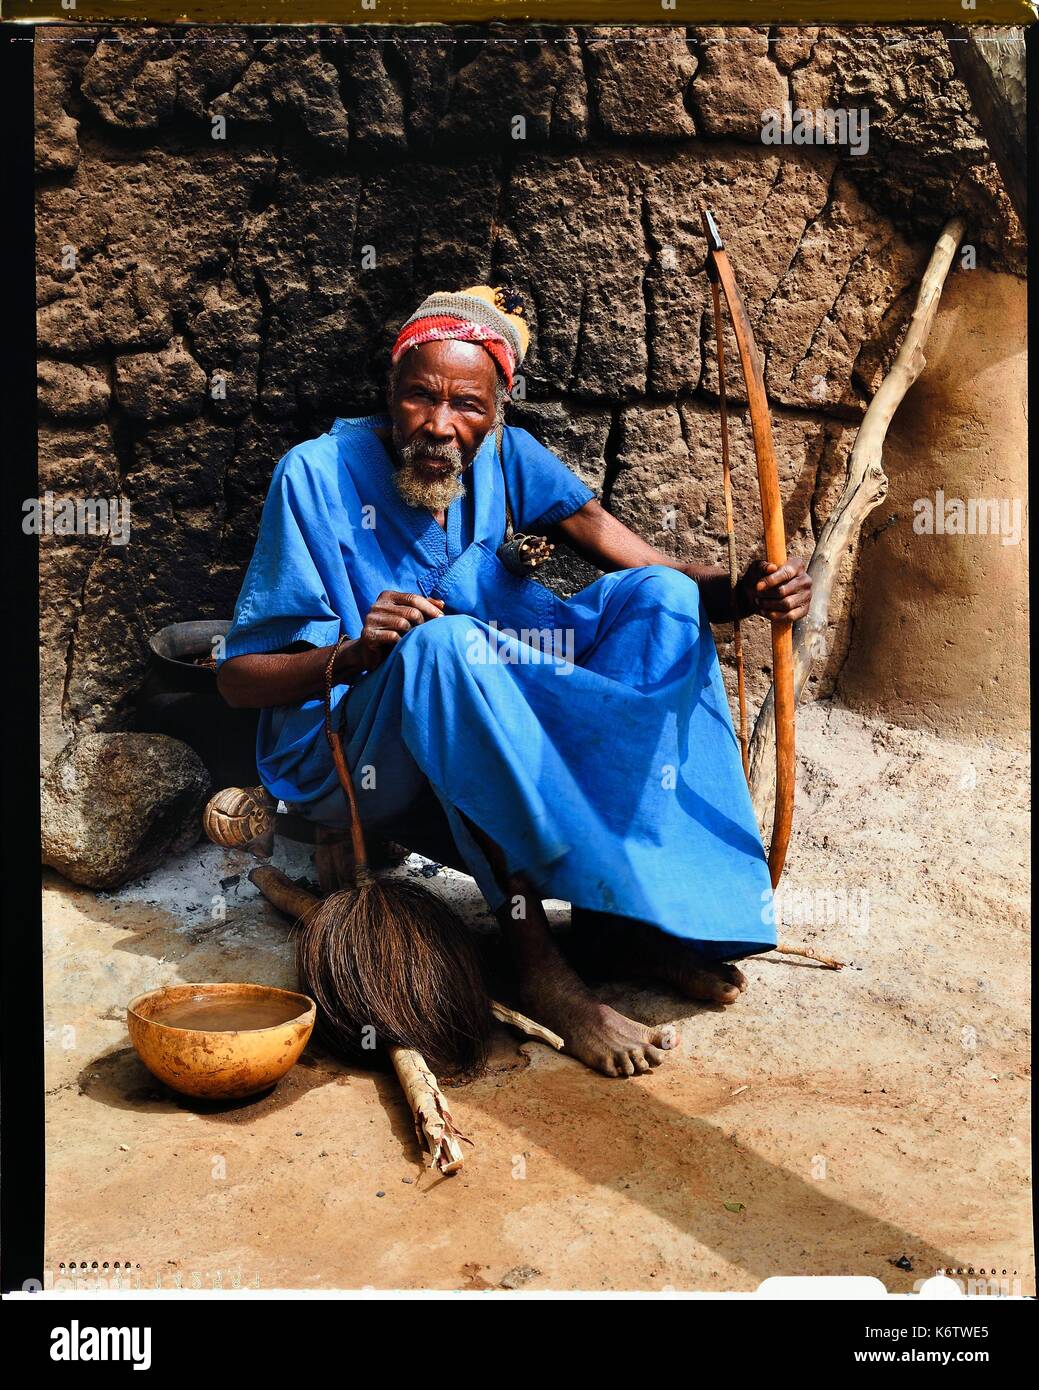 Le Burkina Faso, la province de Poni, terre LoropŽni Lobi, région, chef du village d'Ouadara posant avec ses attributs (arc et flèches, fly swatter) et une calebasse de bière de mil (céréale) Banque D'Images